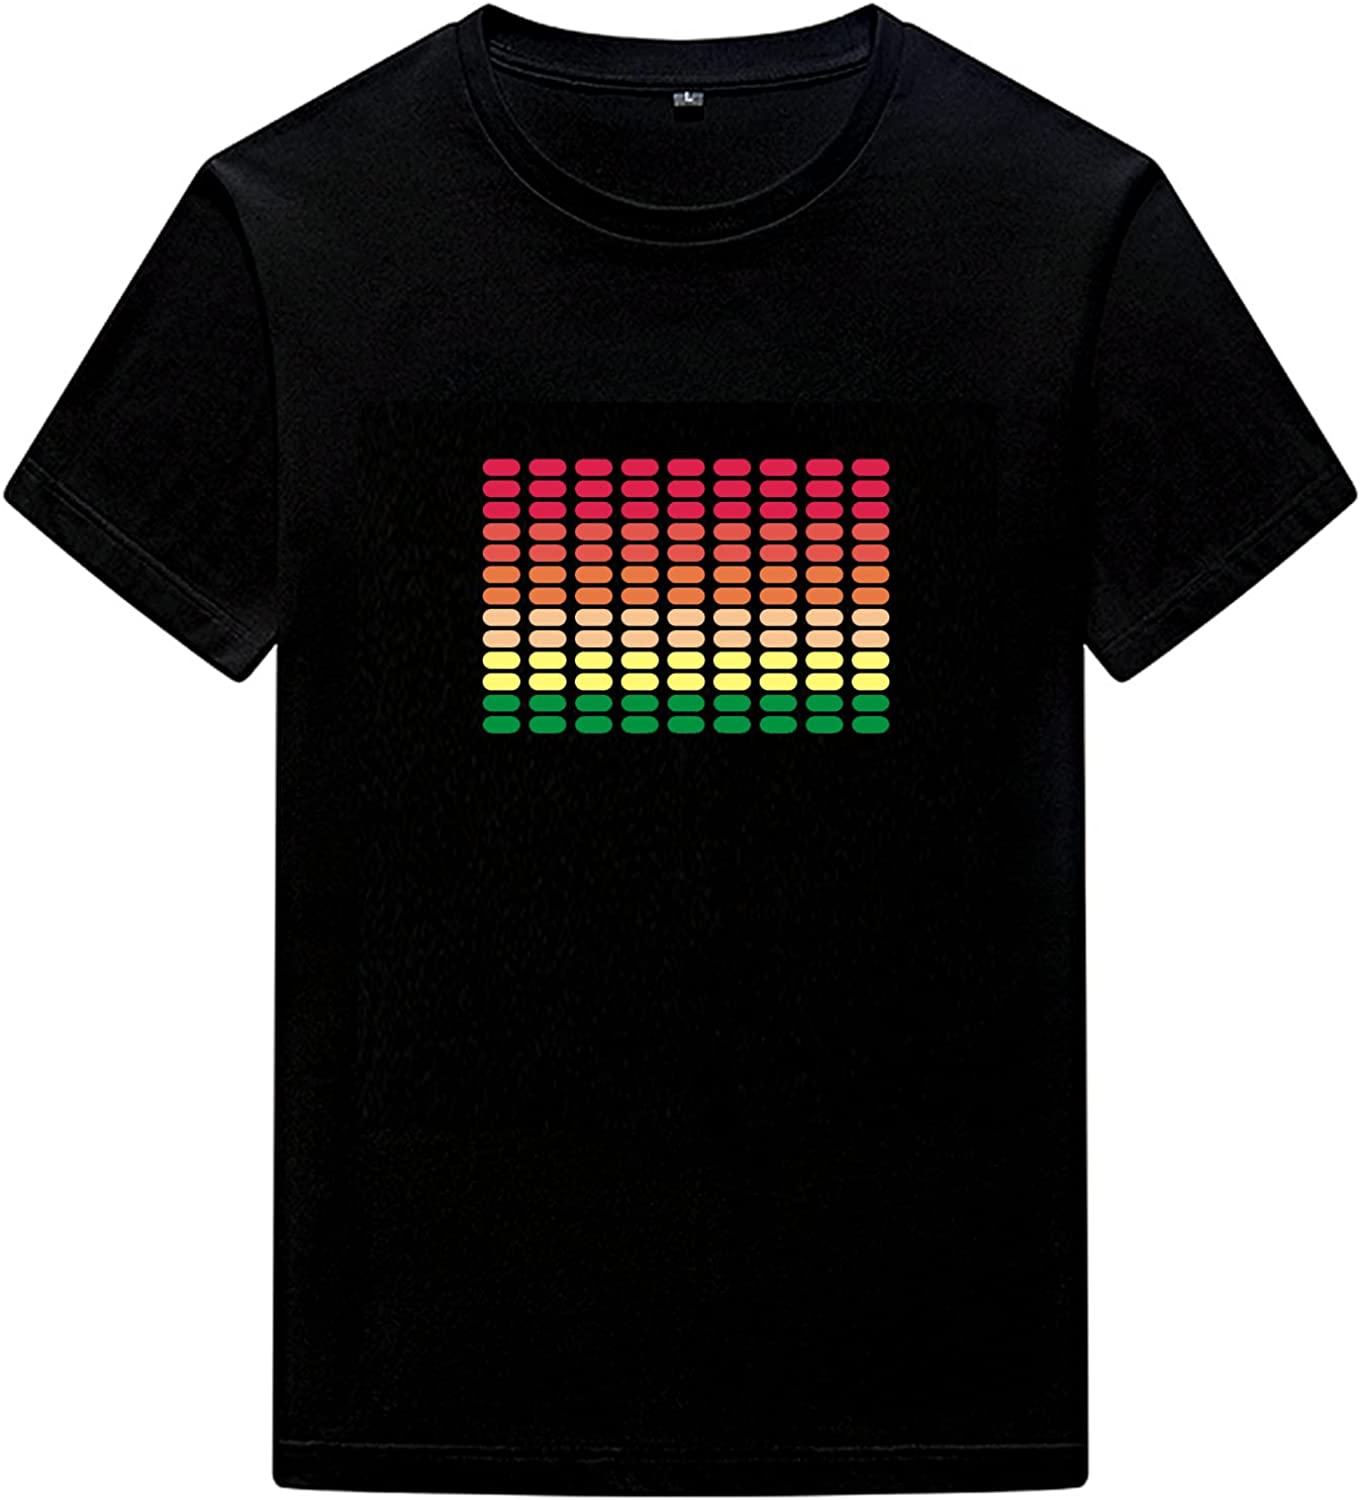 LED Sound Activated T-Shirt Equalizer Novelty Clothing